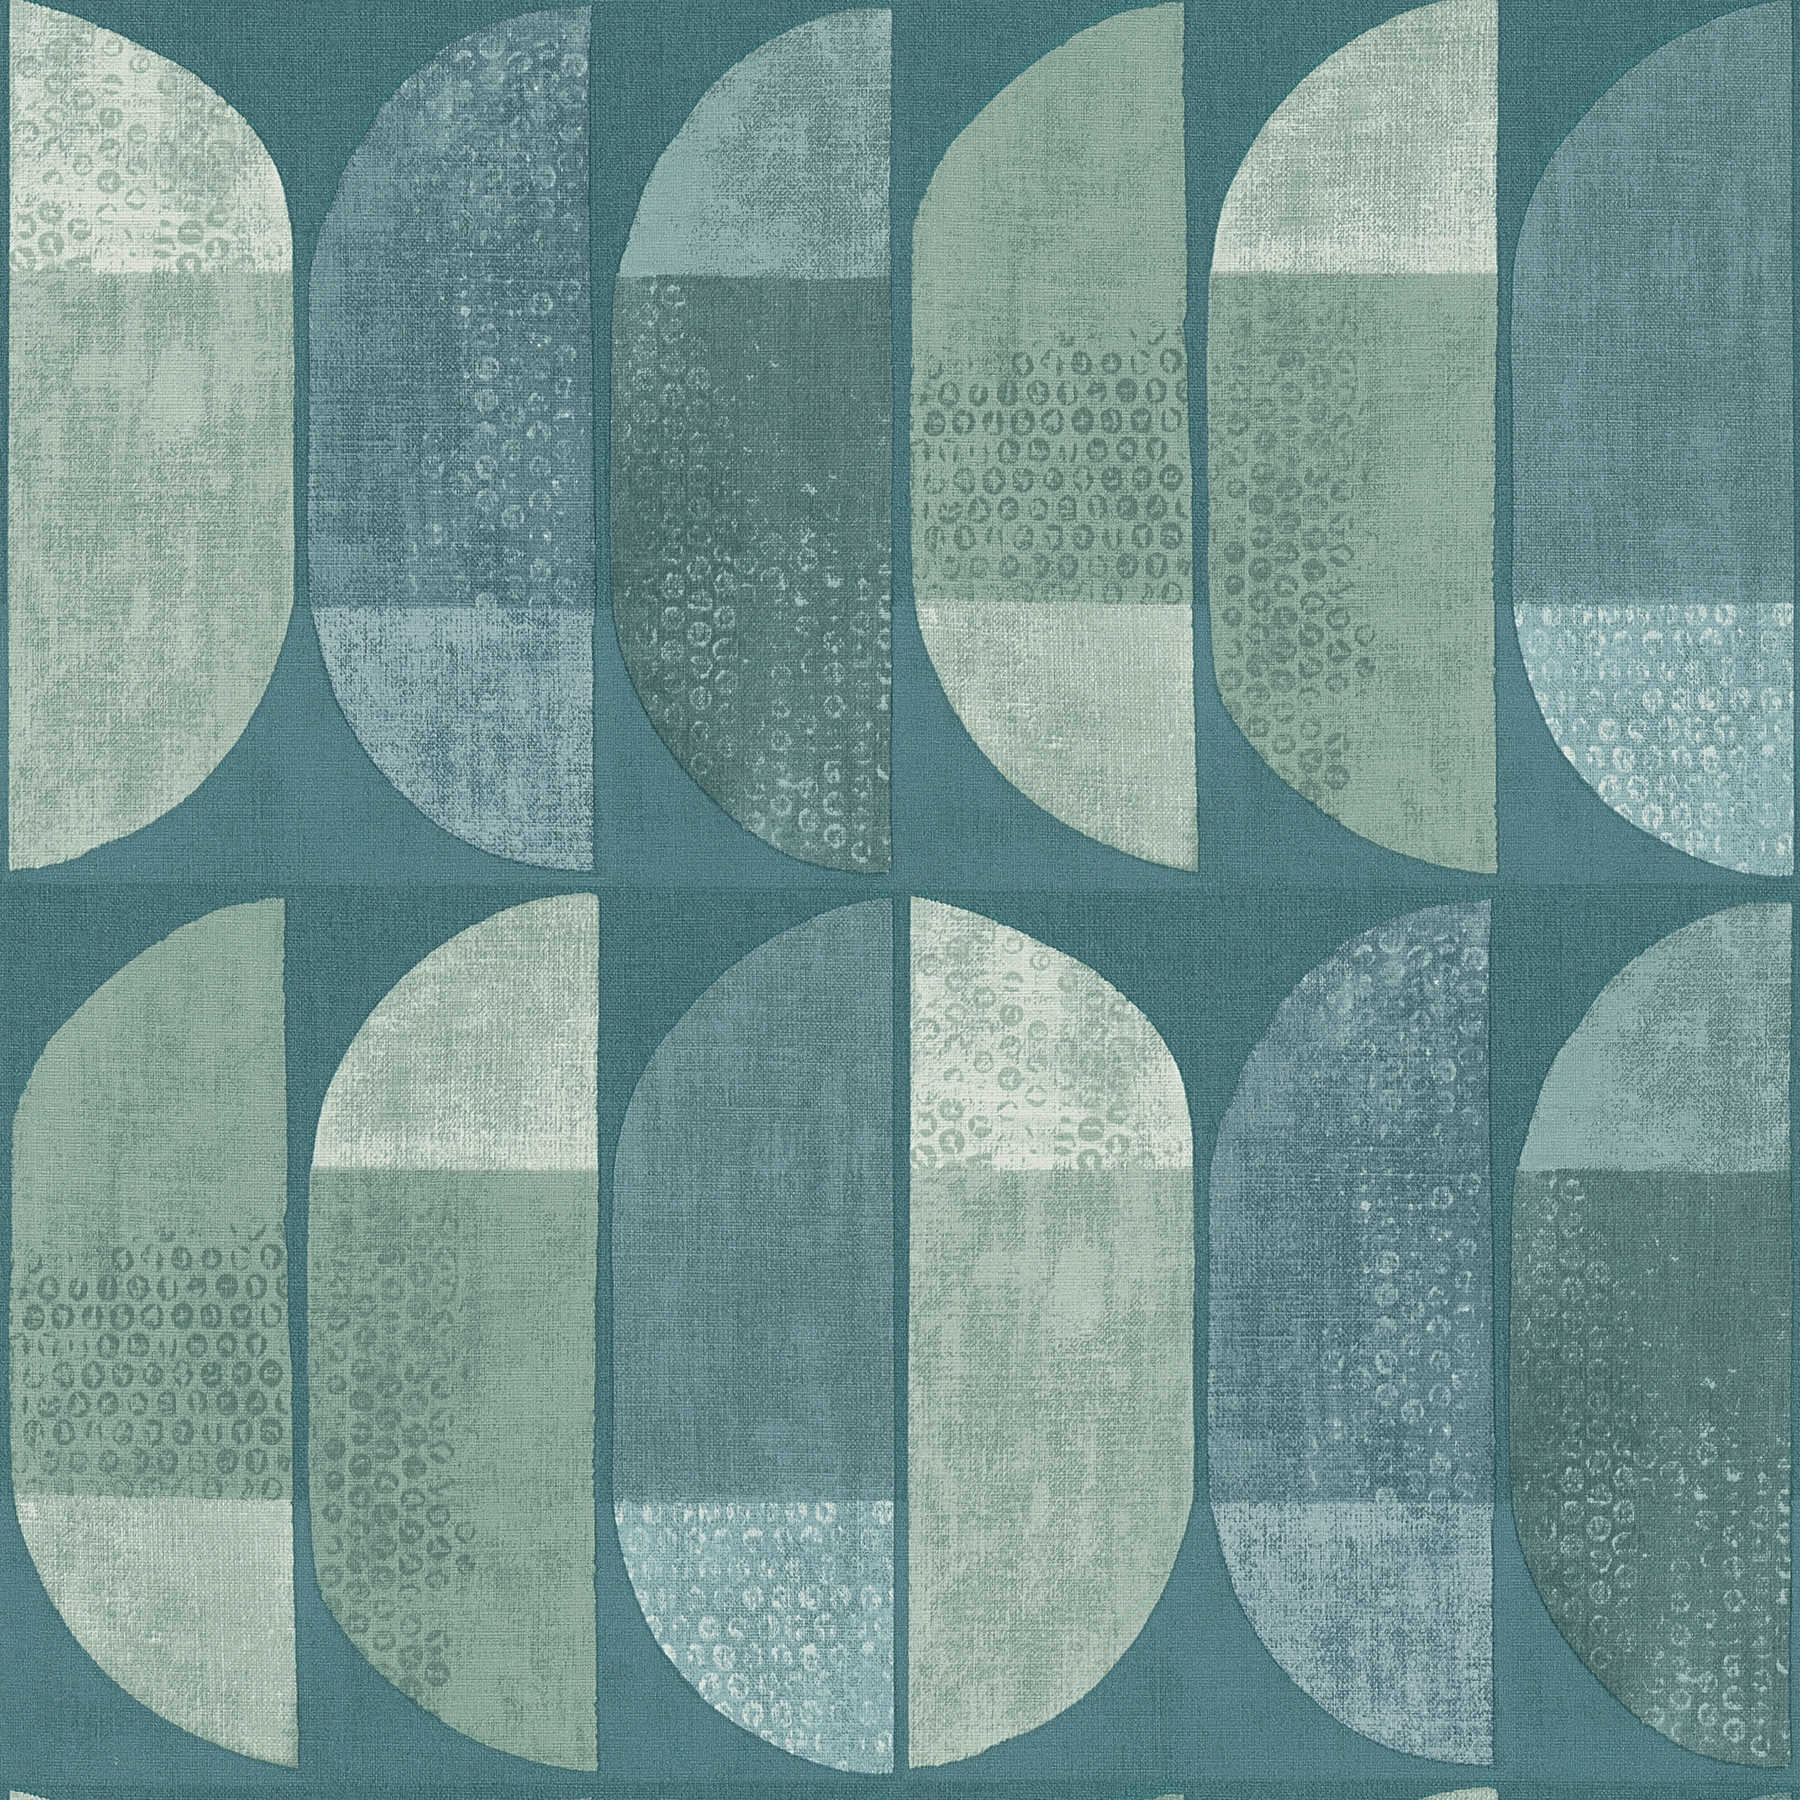 behang geometrisch retro patroon, Scandinavische stijl - blauw, groen
